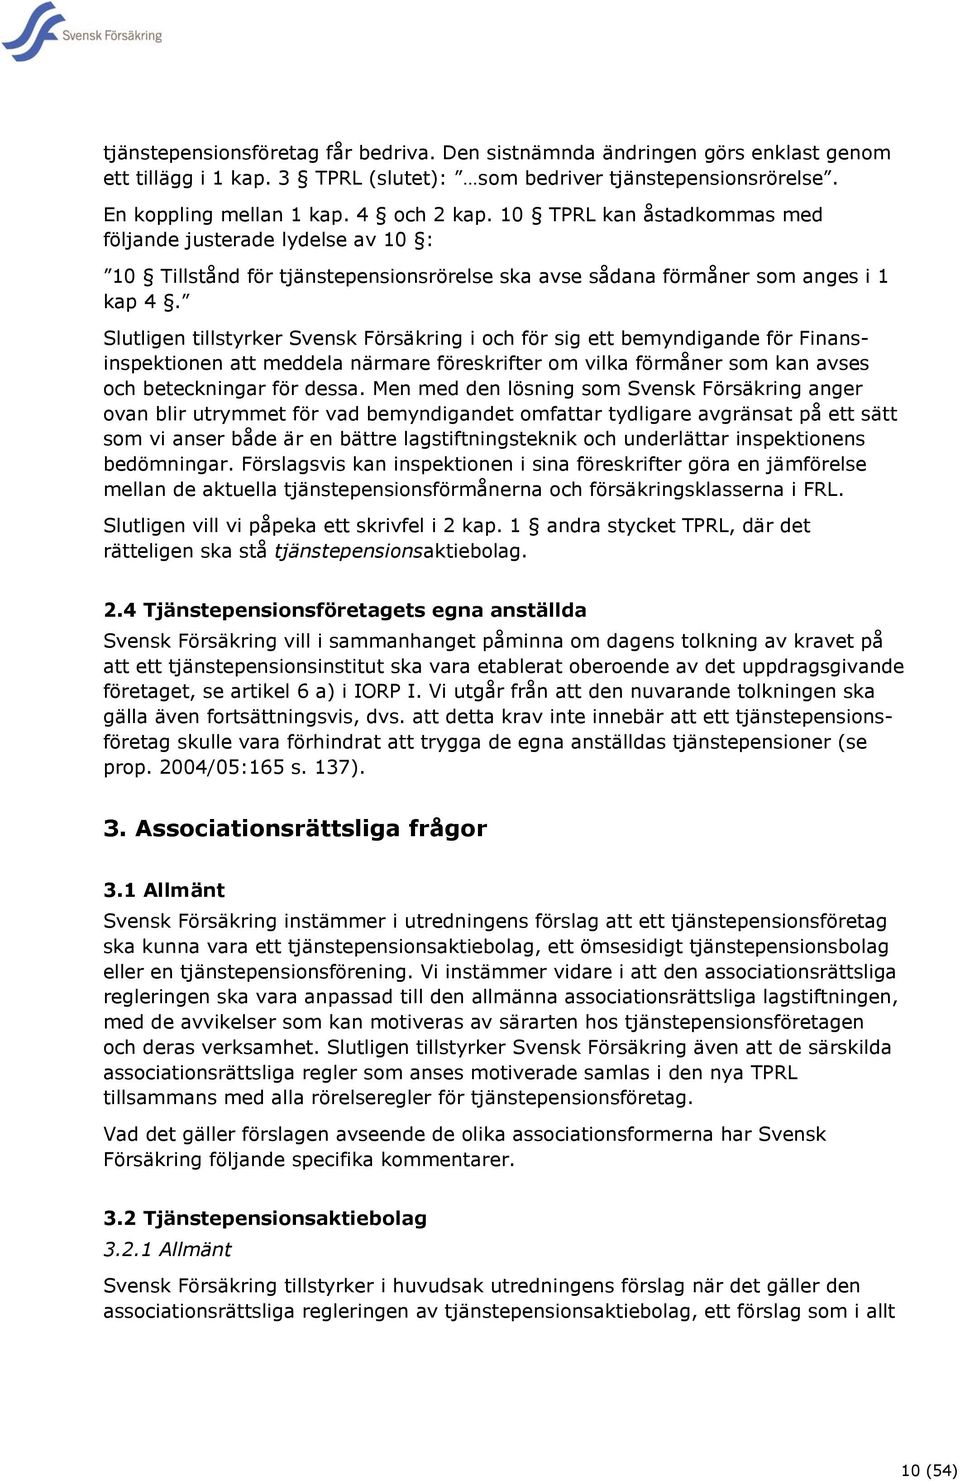 Slutligen tillstyrker Svensk Försäkring i och för sig ett bemyndigande för Finansinspektionen att meddela närmare föreskrifter om vilka förmåner som kan avses och beteckningar för dessa.